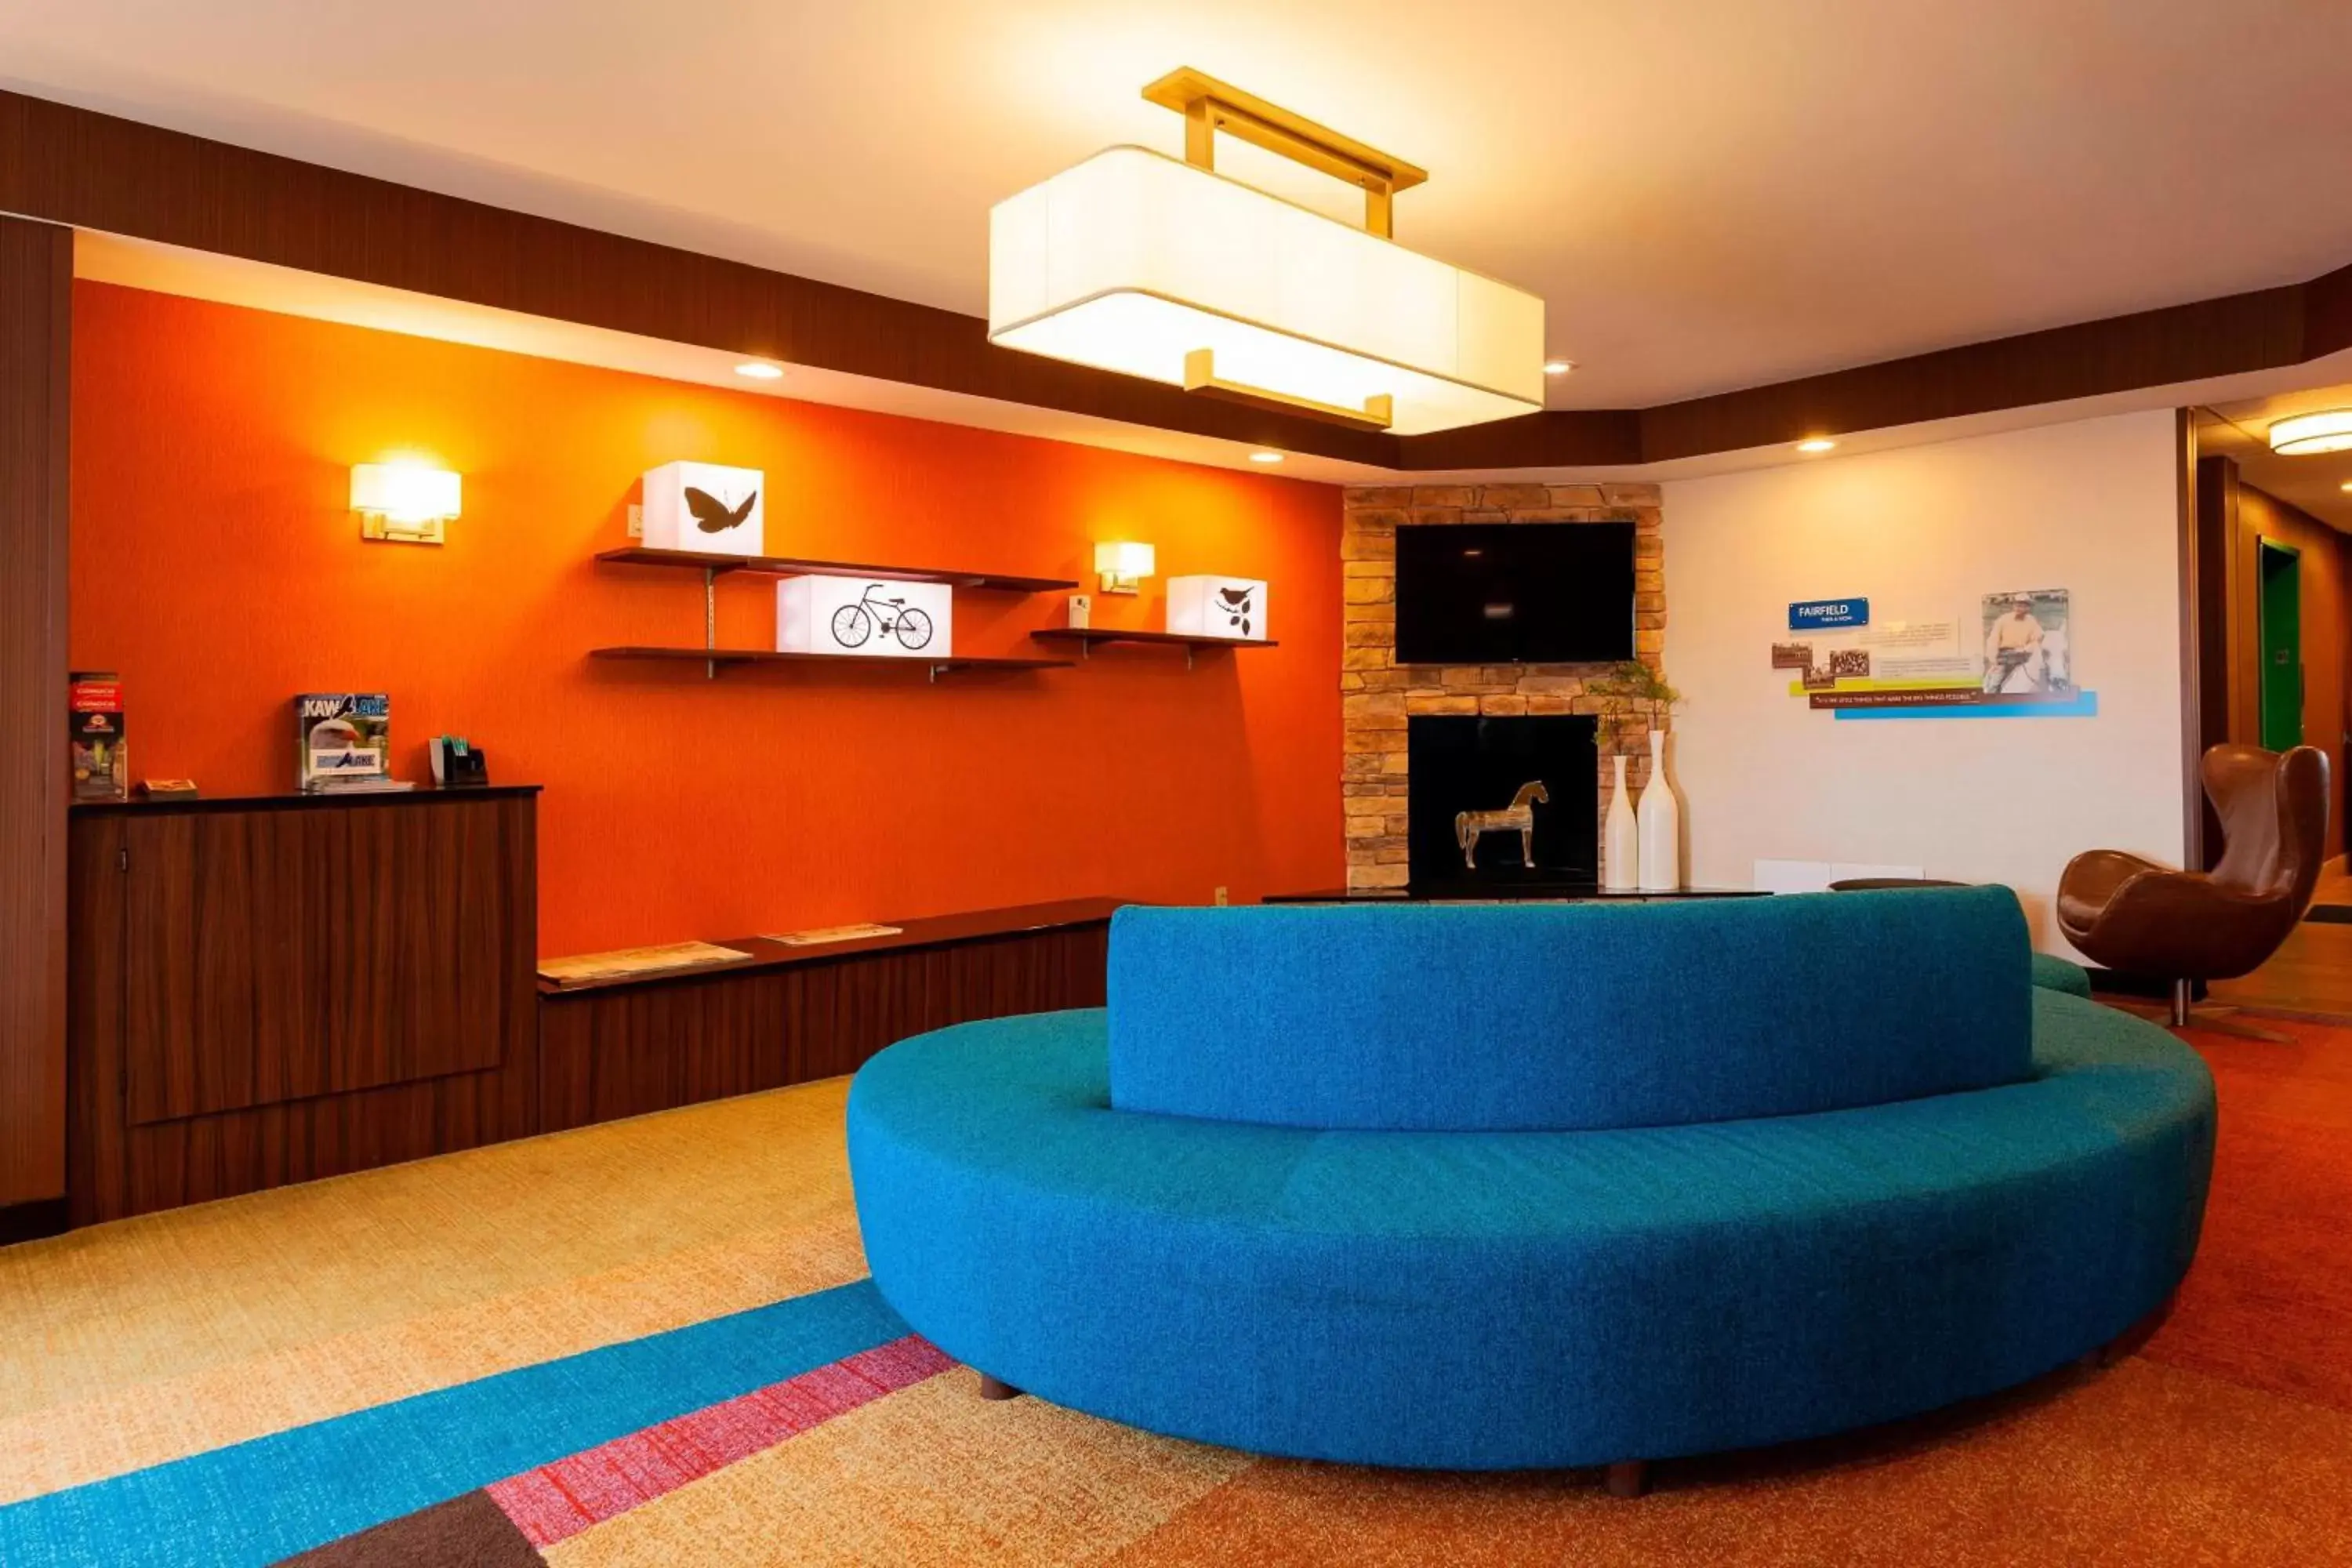 Lobby or reception, Lobby/Reception in Fairfield Inn by Marriott Ponca City